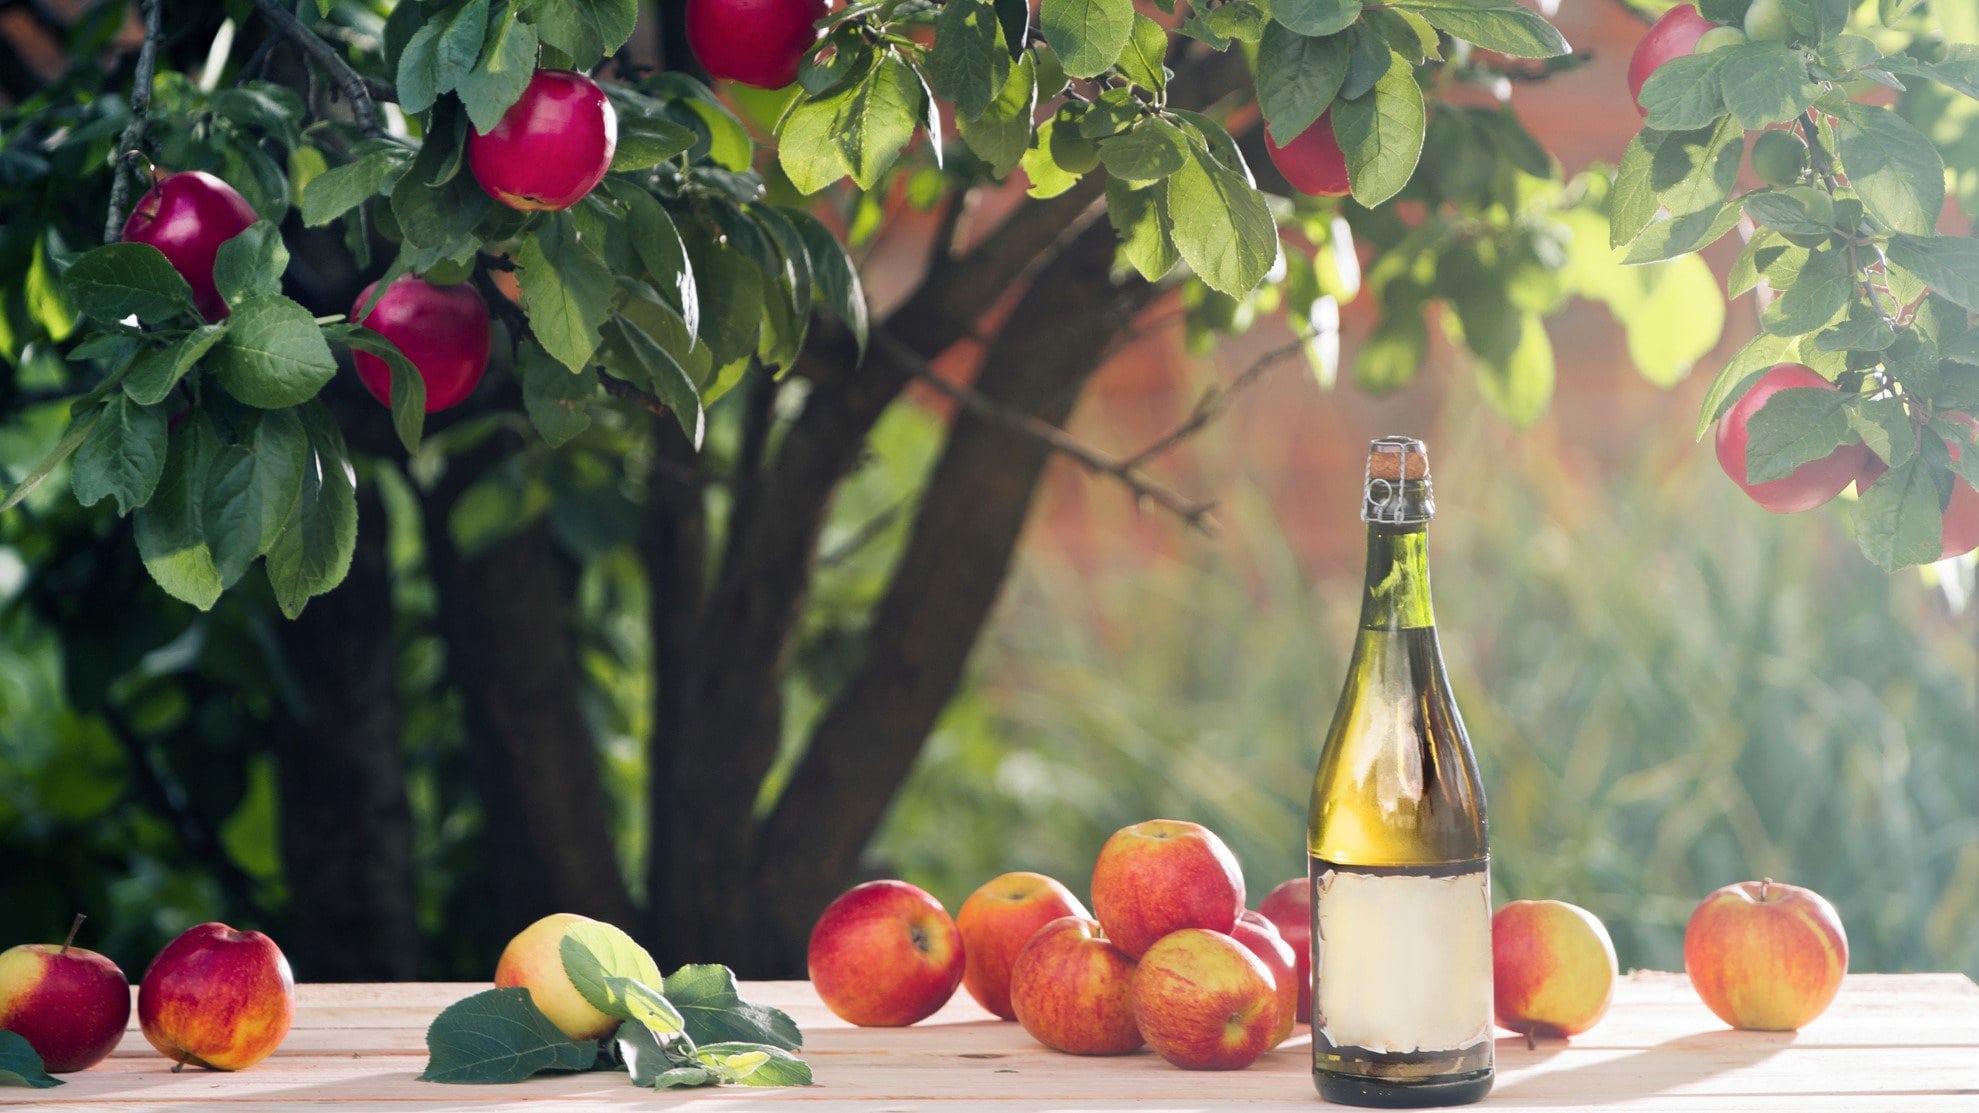 Cidre oder Cider Flaxche unter Apfelbaum auf einem Tisch mit Äpfeln. Frontalansicht.